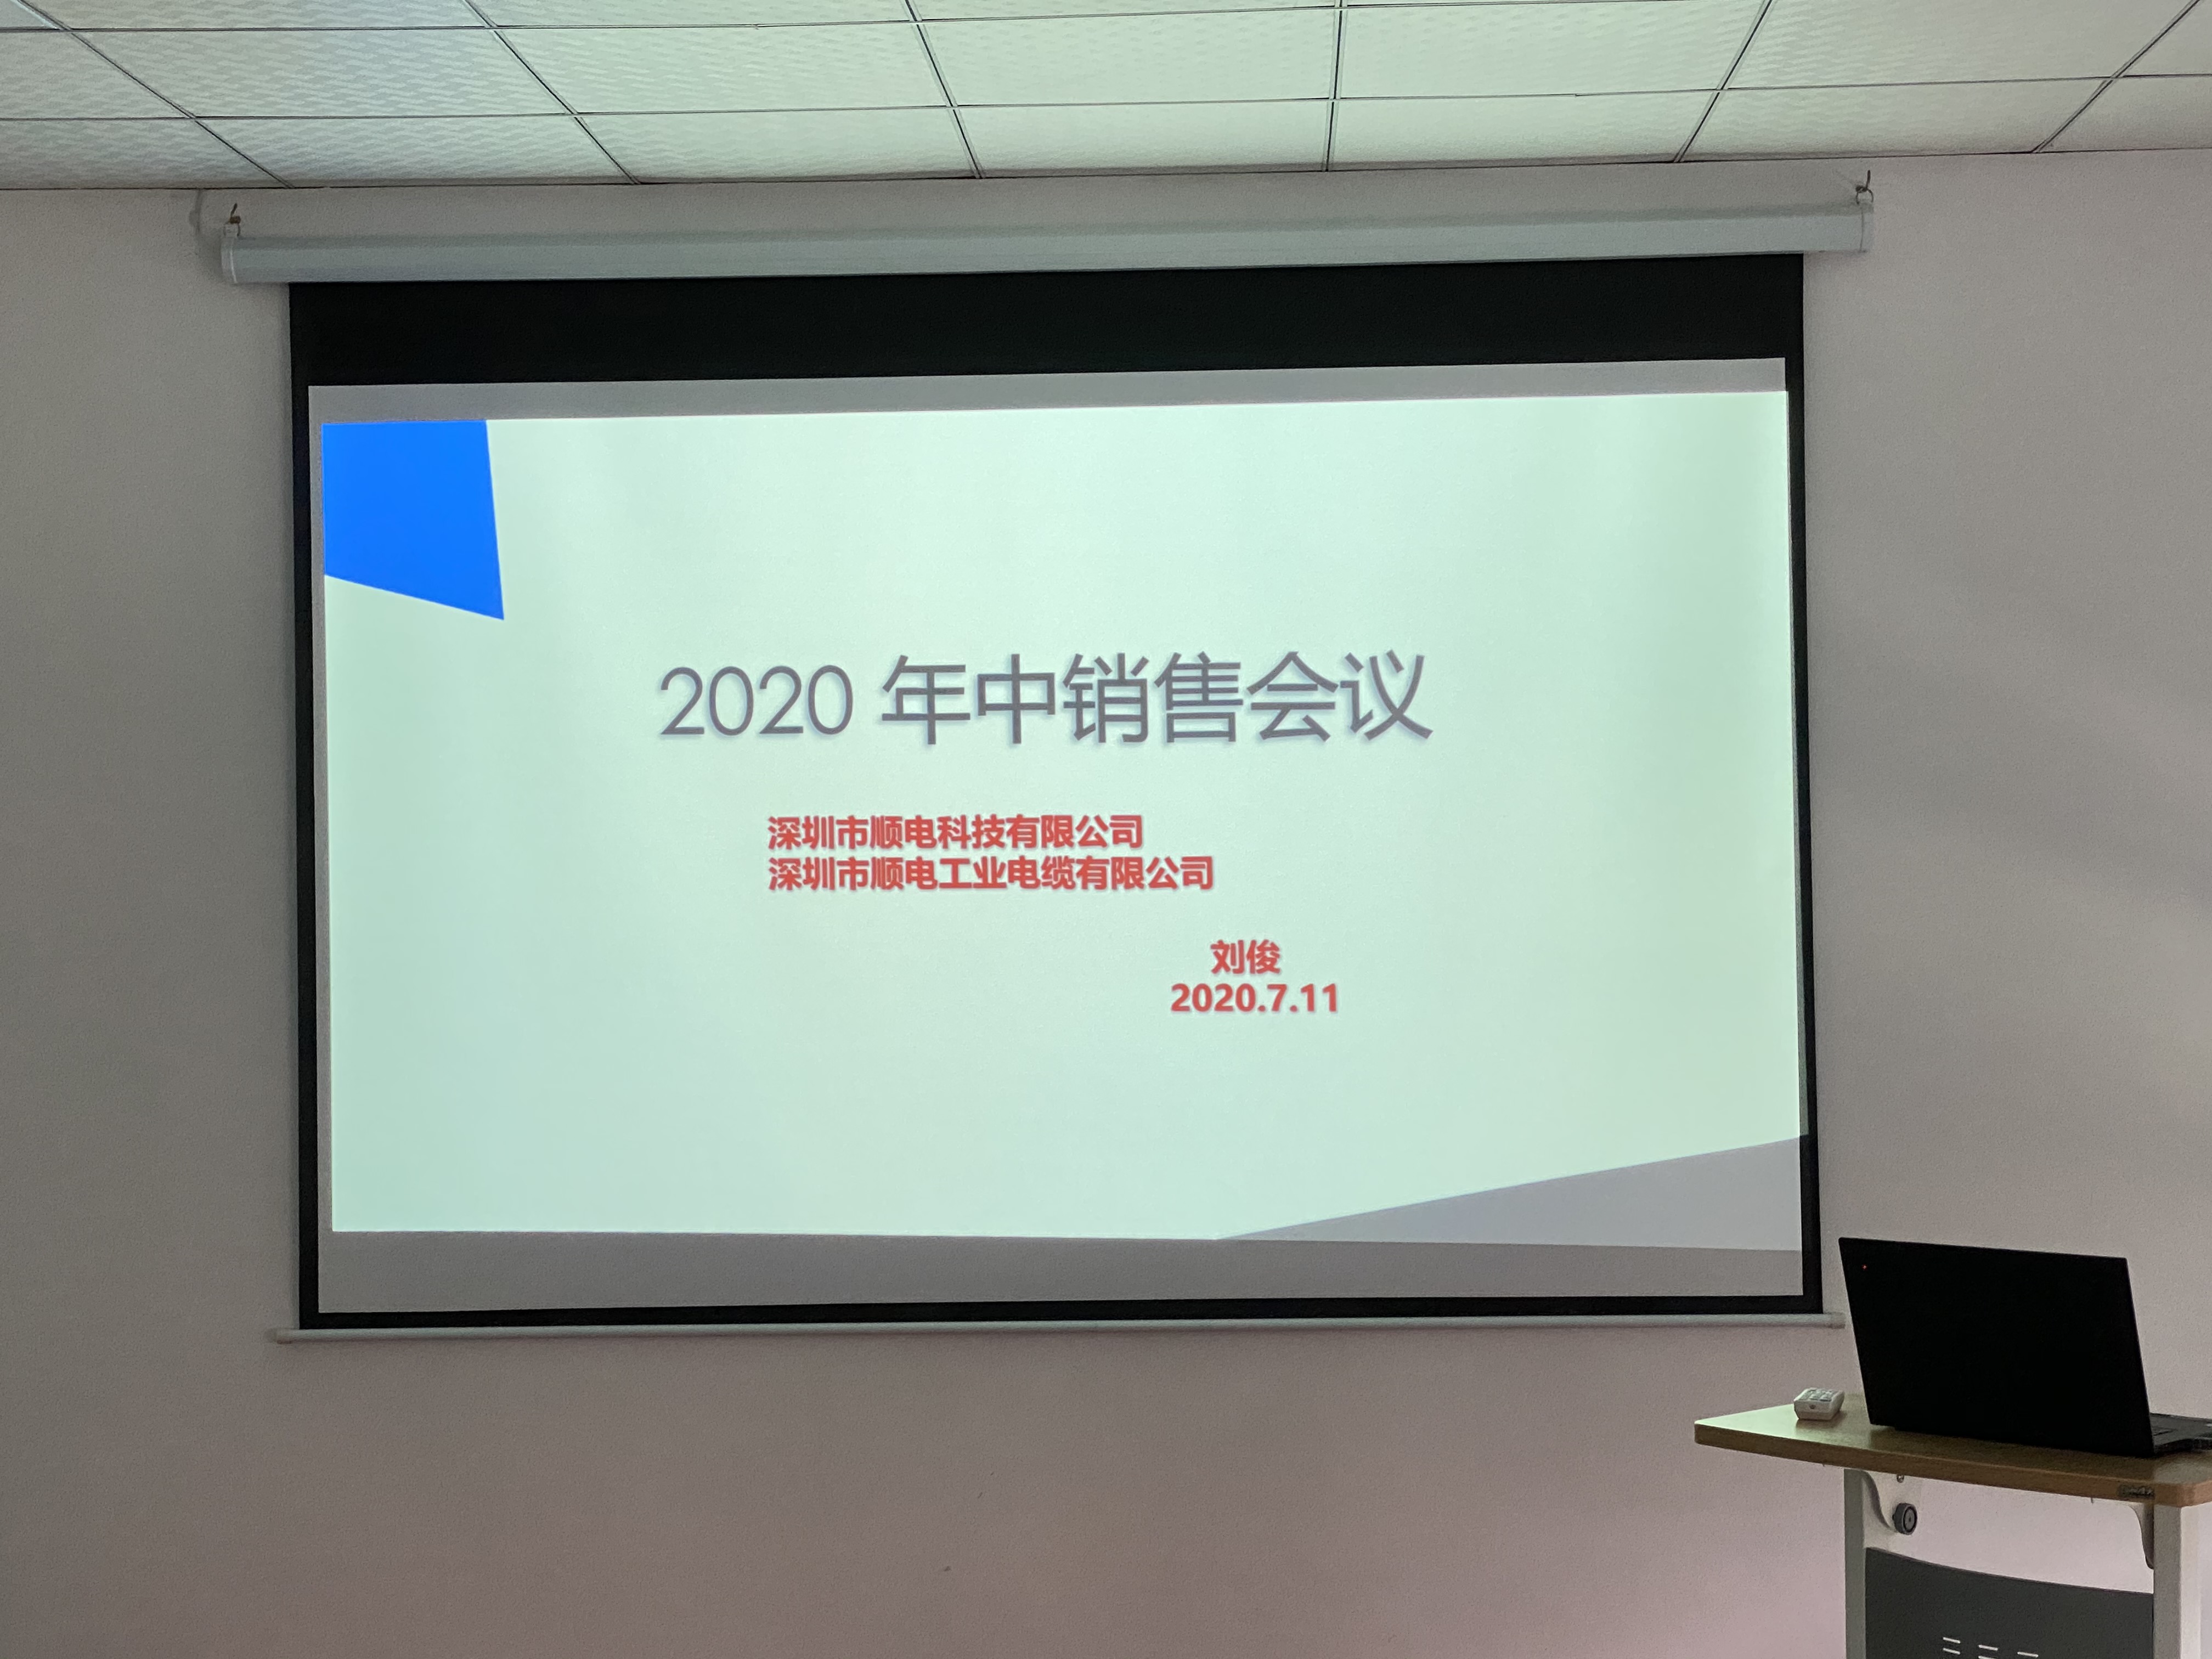 天博电竞2020年中营销会议——坚定信念，寻找突破